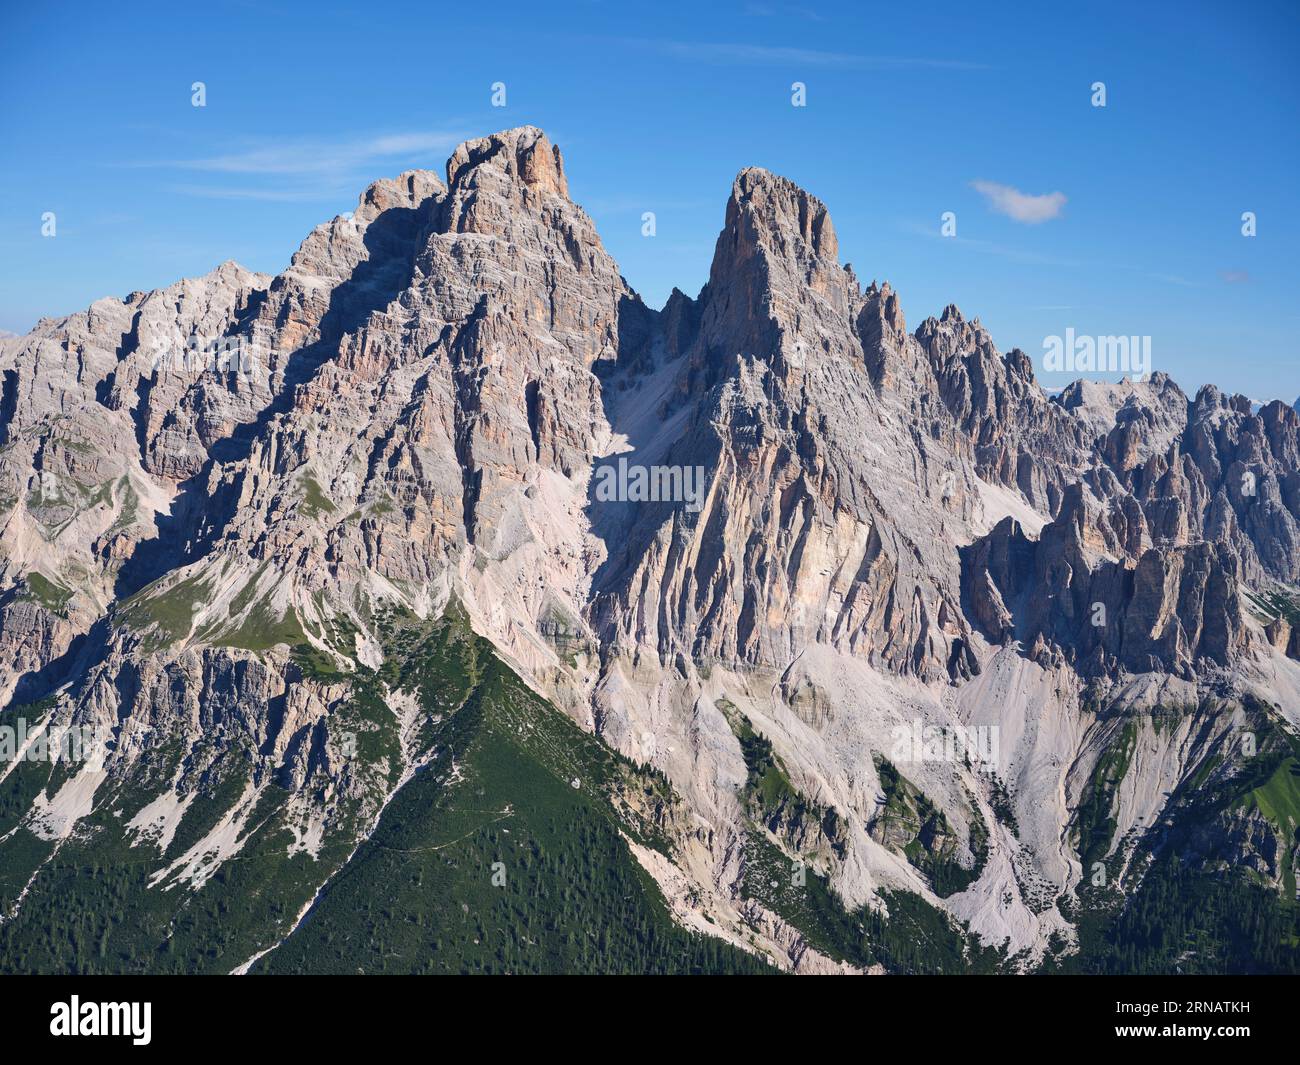 VUE AÉRIENNE. Face sud du Monte Cristallo (altitude : 3221m) dans les Dolomites. Auronzo di Cadore, province de Belluno, Vénétie, Italie. Banque D'Images